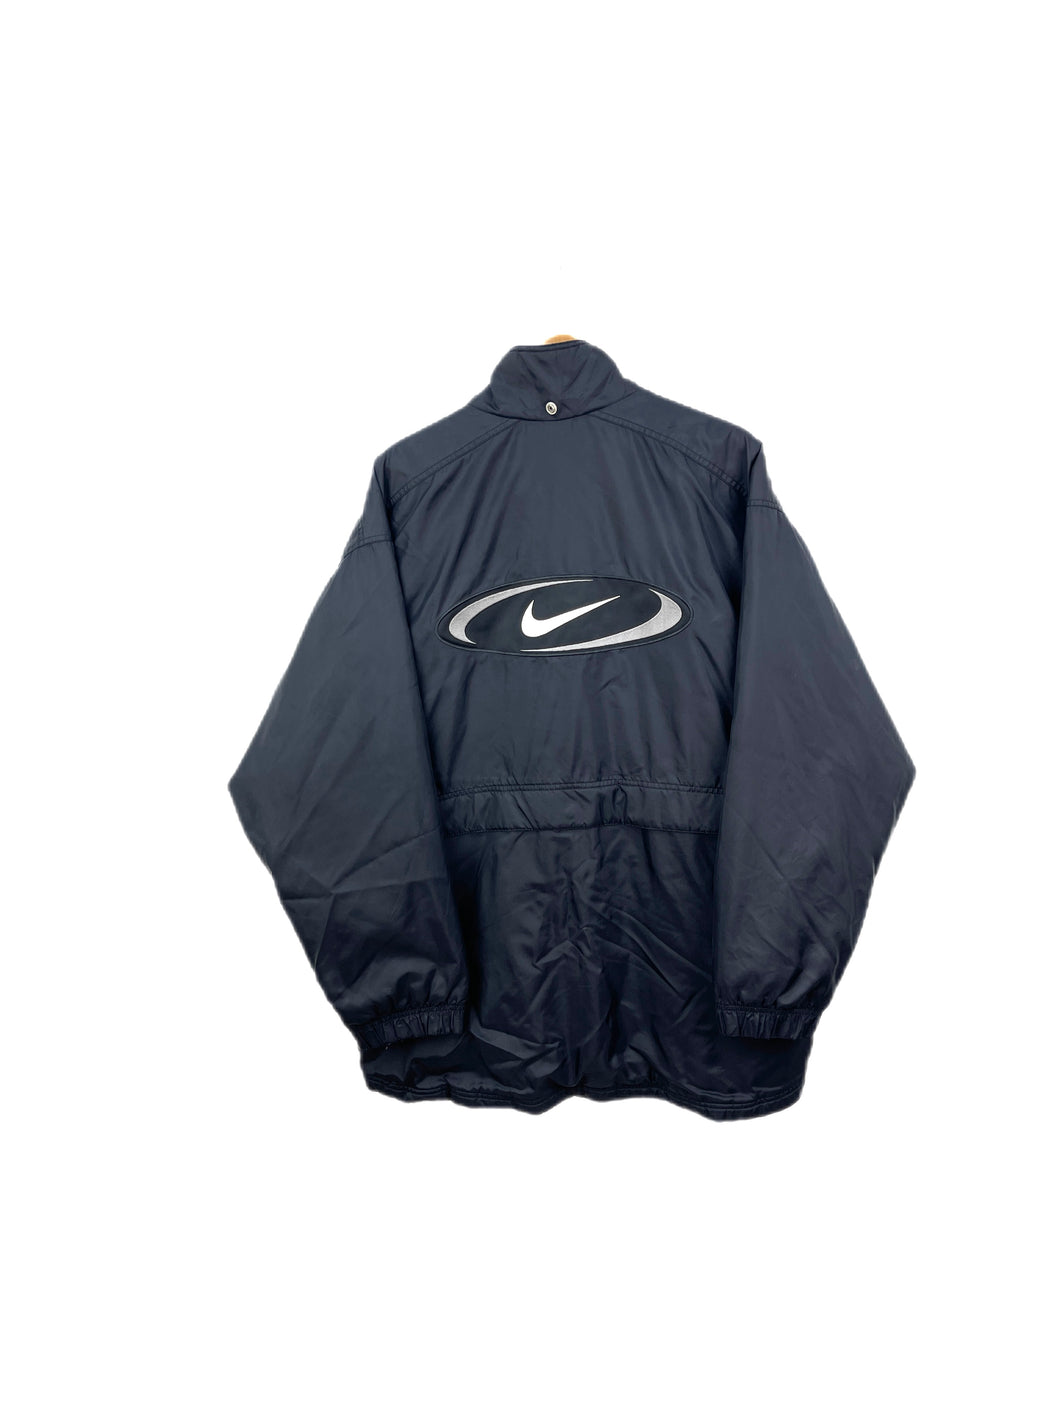 Nike Coat - XLarge